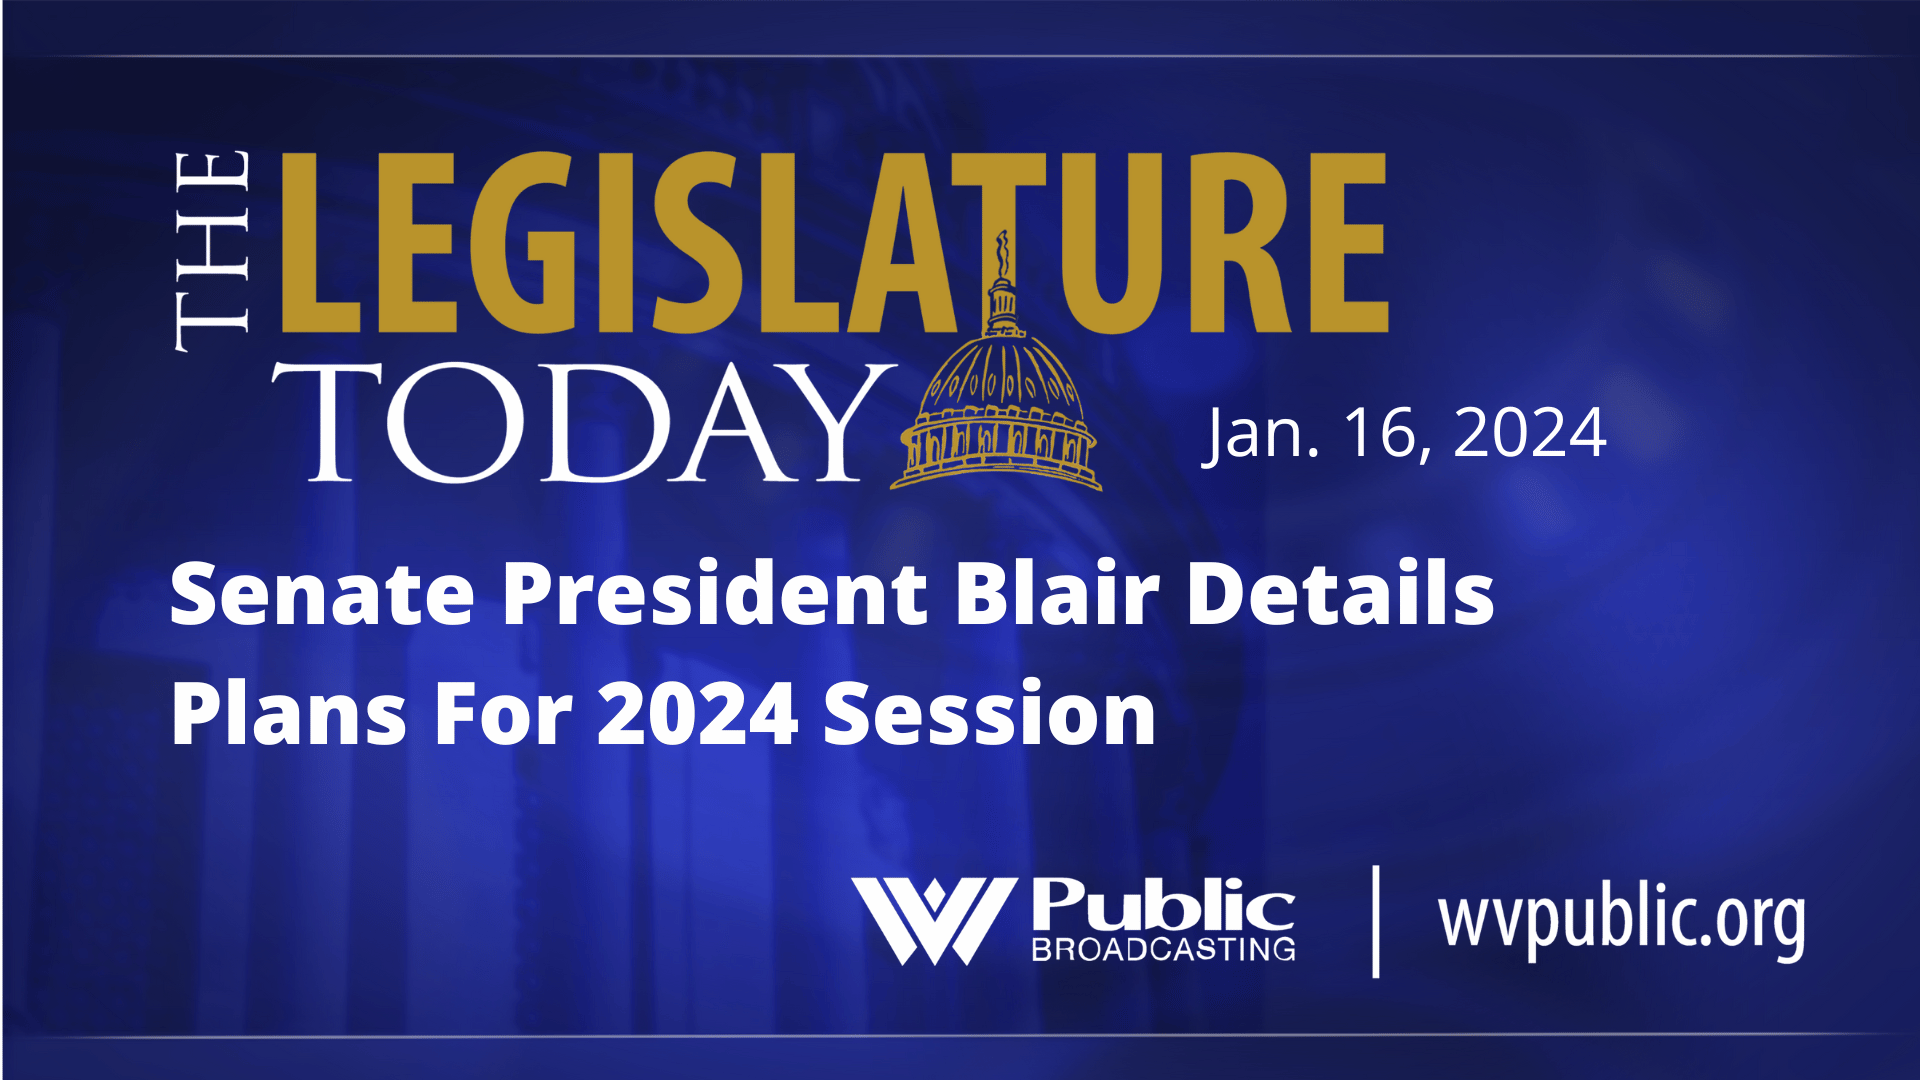 Senate President Blair Details Plans For 2024 Session